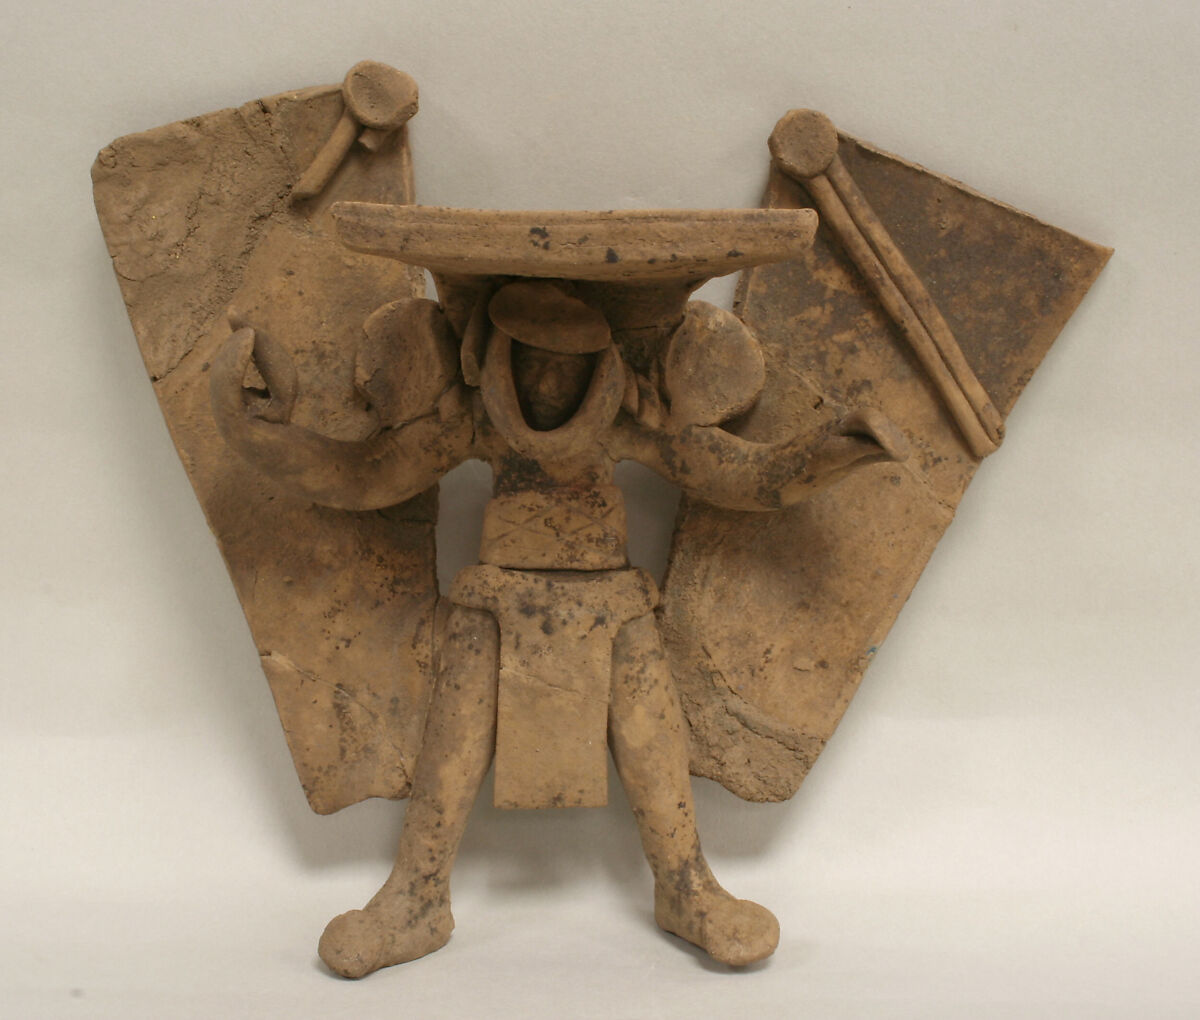 Standing Ceramic Winged Figure, Ceramic, Remojadas 